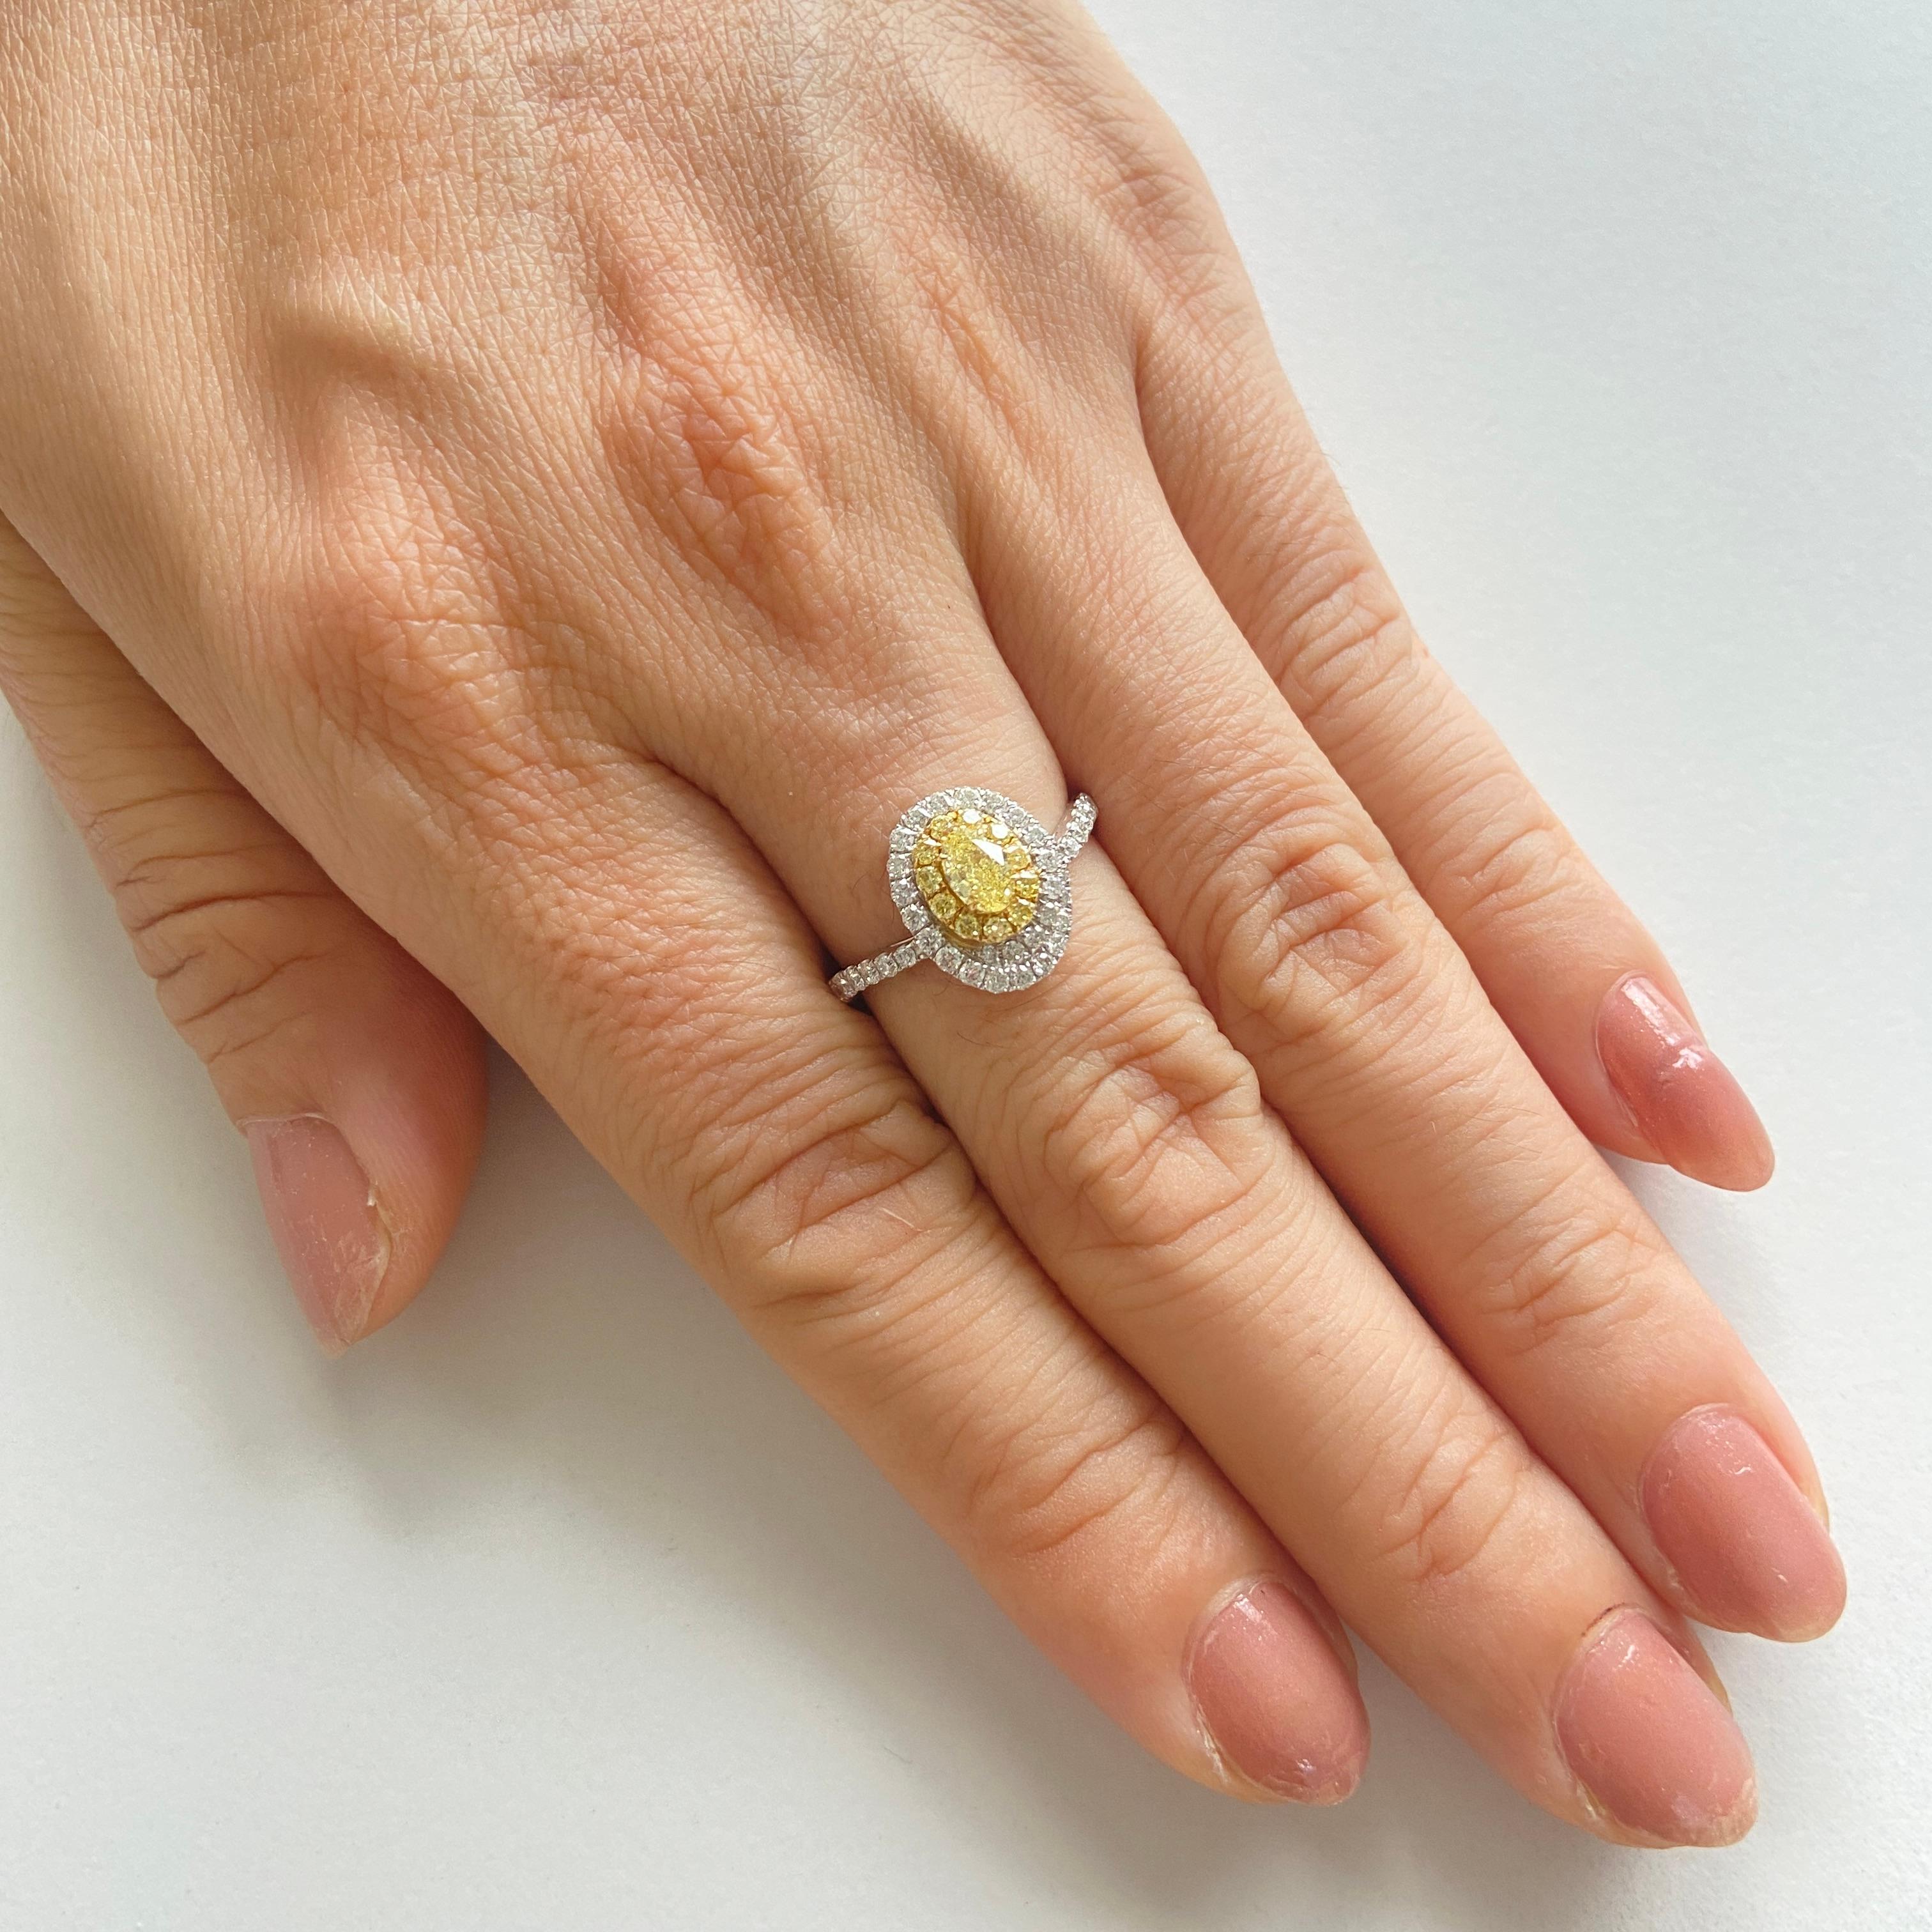 Individuelles Design, das den ovalen gelben Diamanten mit einem Halo aus gelben und weißen Diamanten hervorhebt. Der Ring ist eine perfekte Kreation mit einem einzigartigen Motiv.

-	Der Diamant in der Mitte ist ein CGL Lab Certified Fancy Yellow